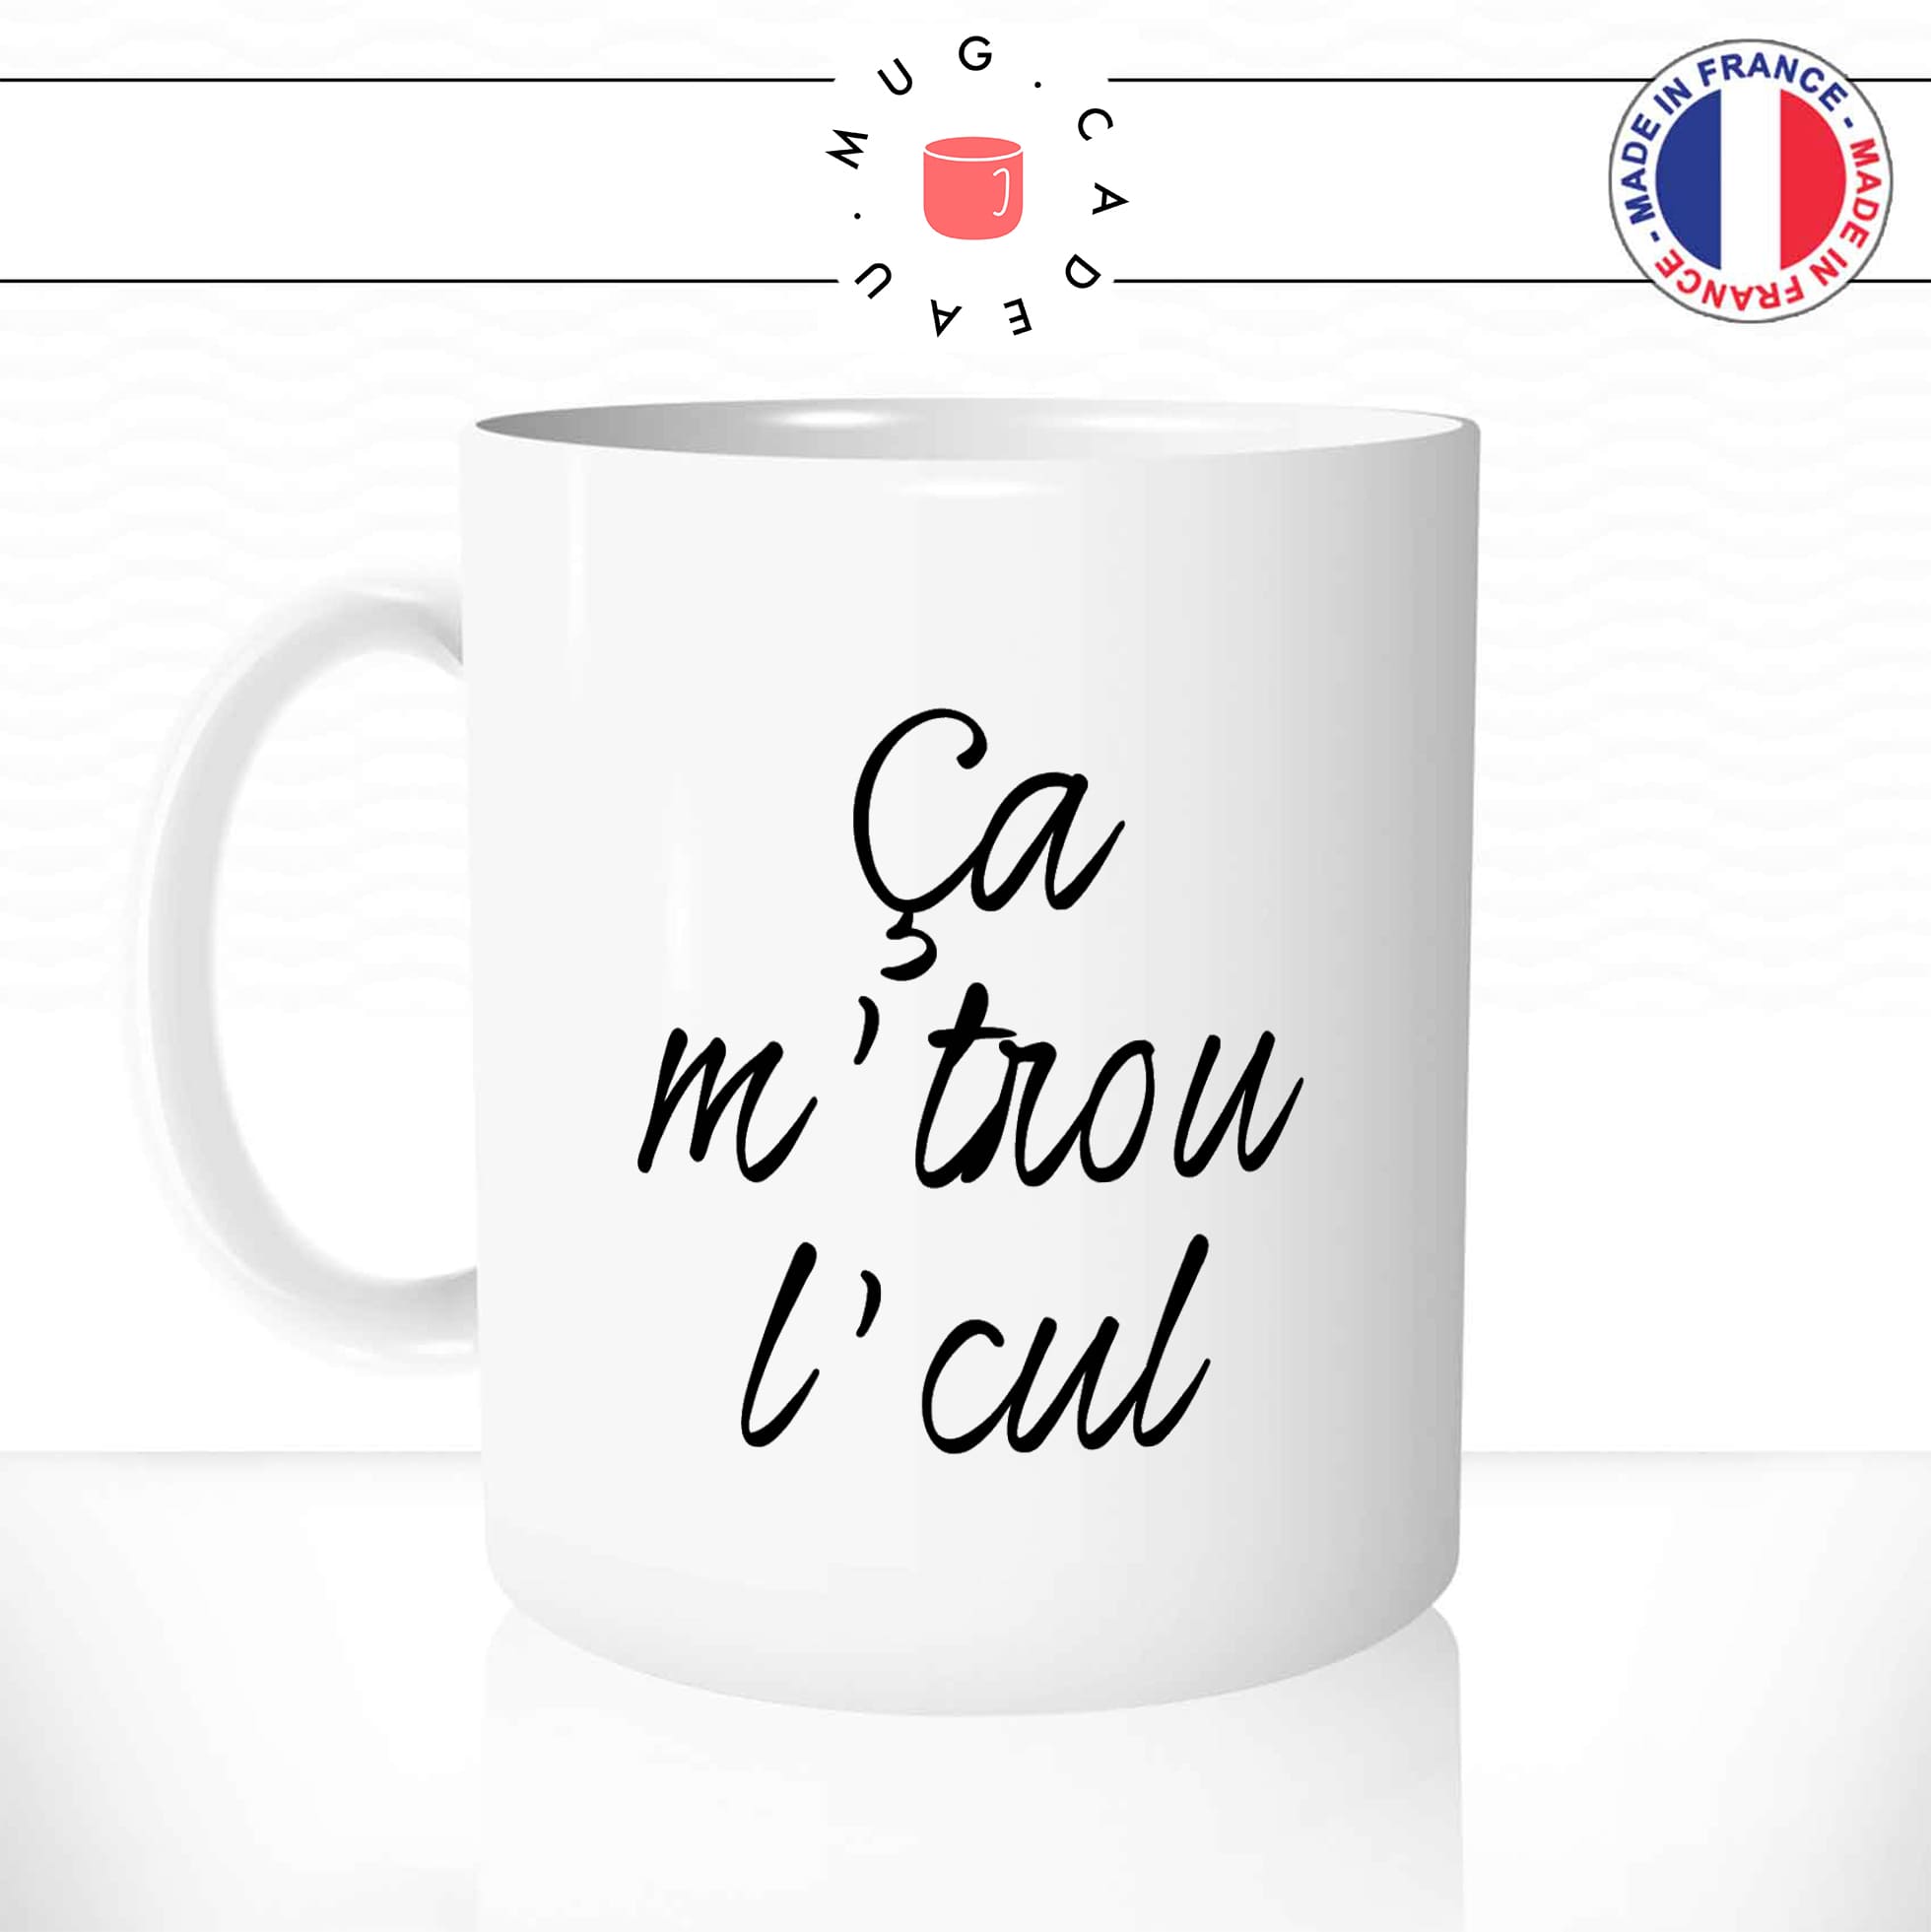 mug-tasse-blanc-unique-ca-me-trou-le-cul-expression-francaise-homme-femme-humour-fun-cool-idée-cadeau-original-personnalisé